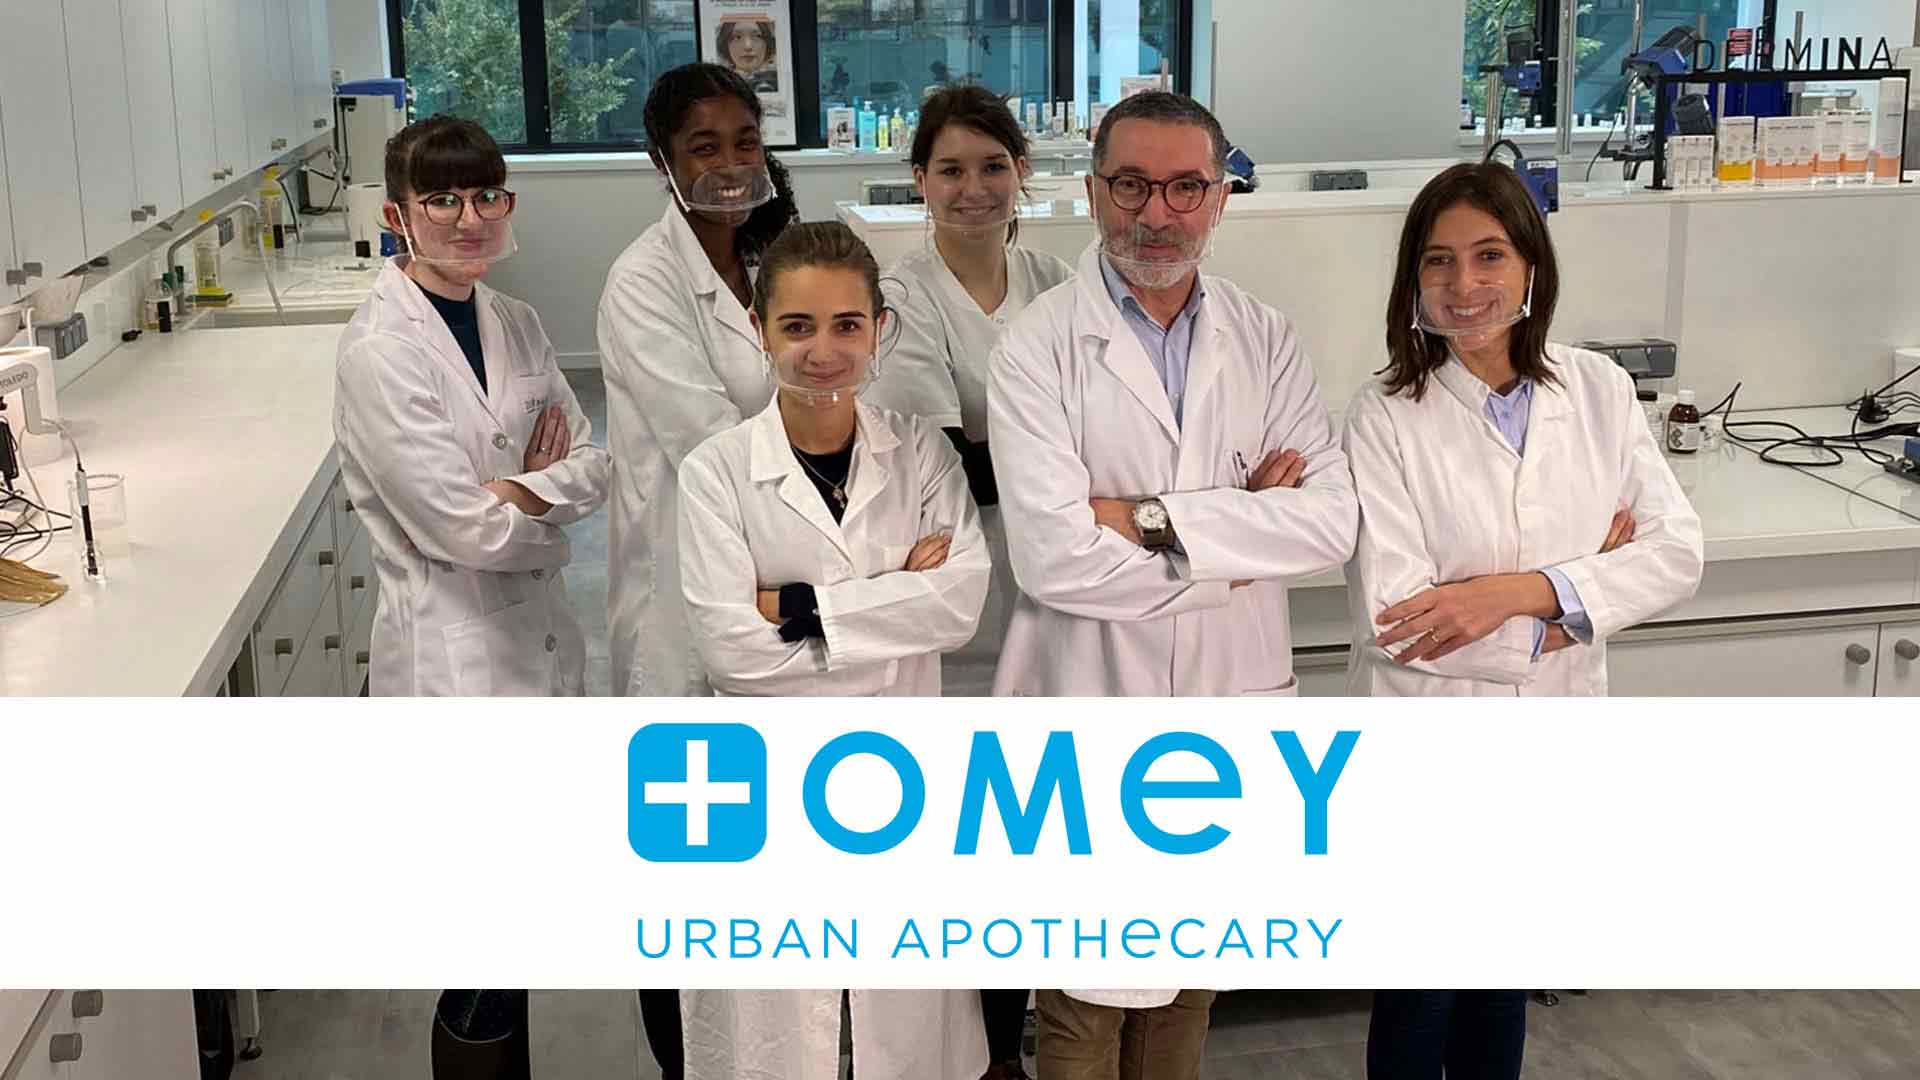 Exzellenz und Innovation in der Kosmetik vereinen - Aufstieg der OMEY-Gruppe in der Region Paris